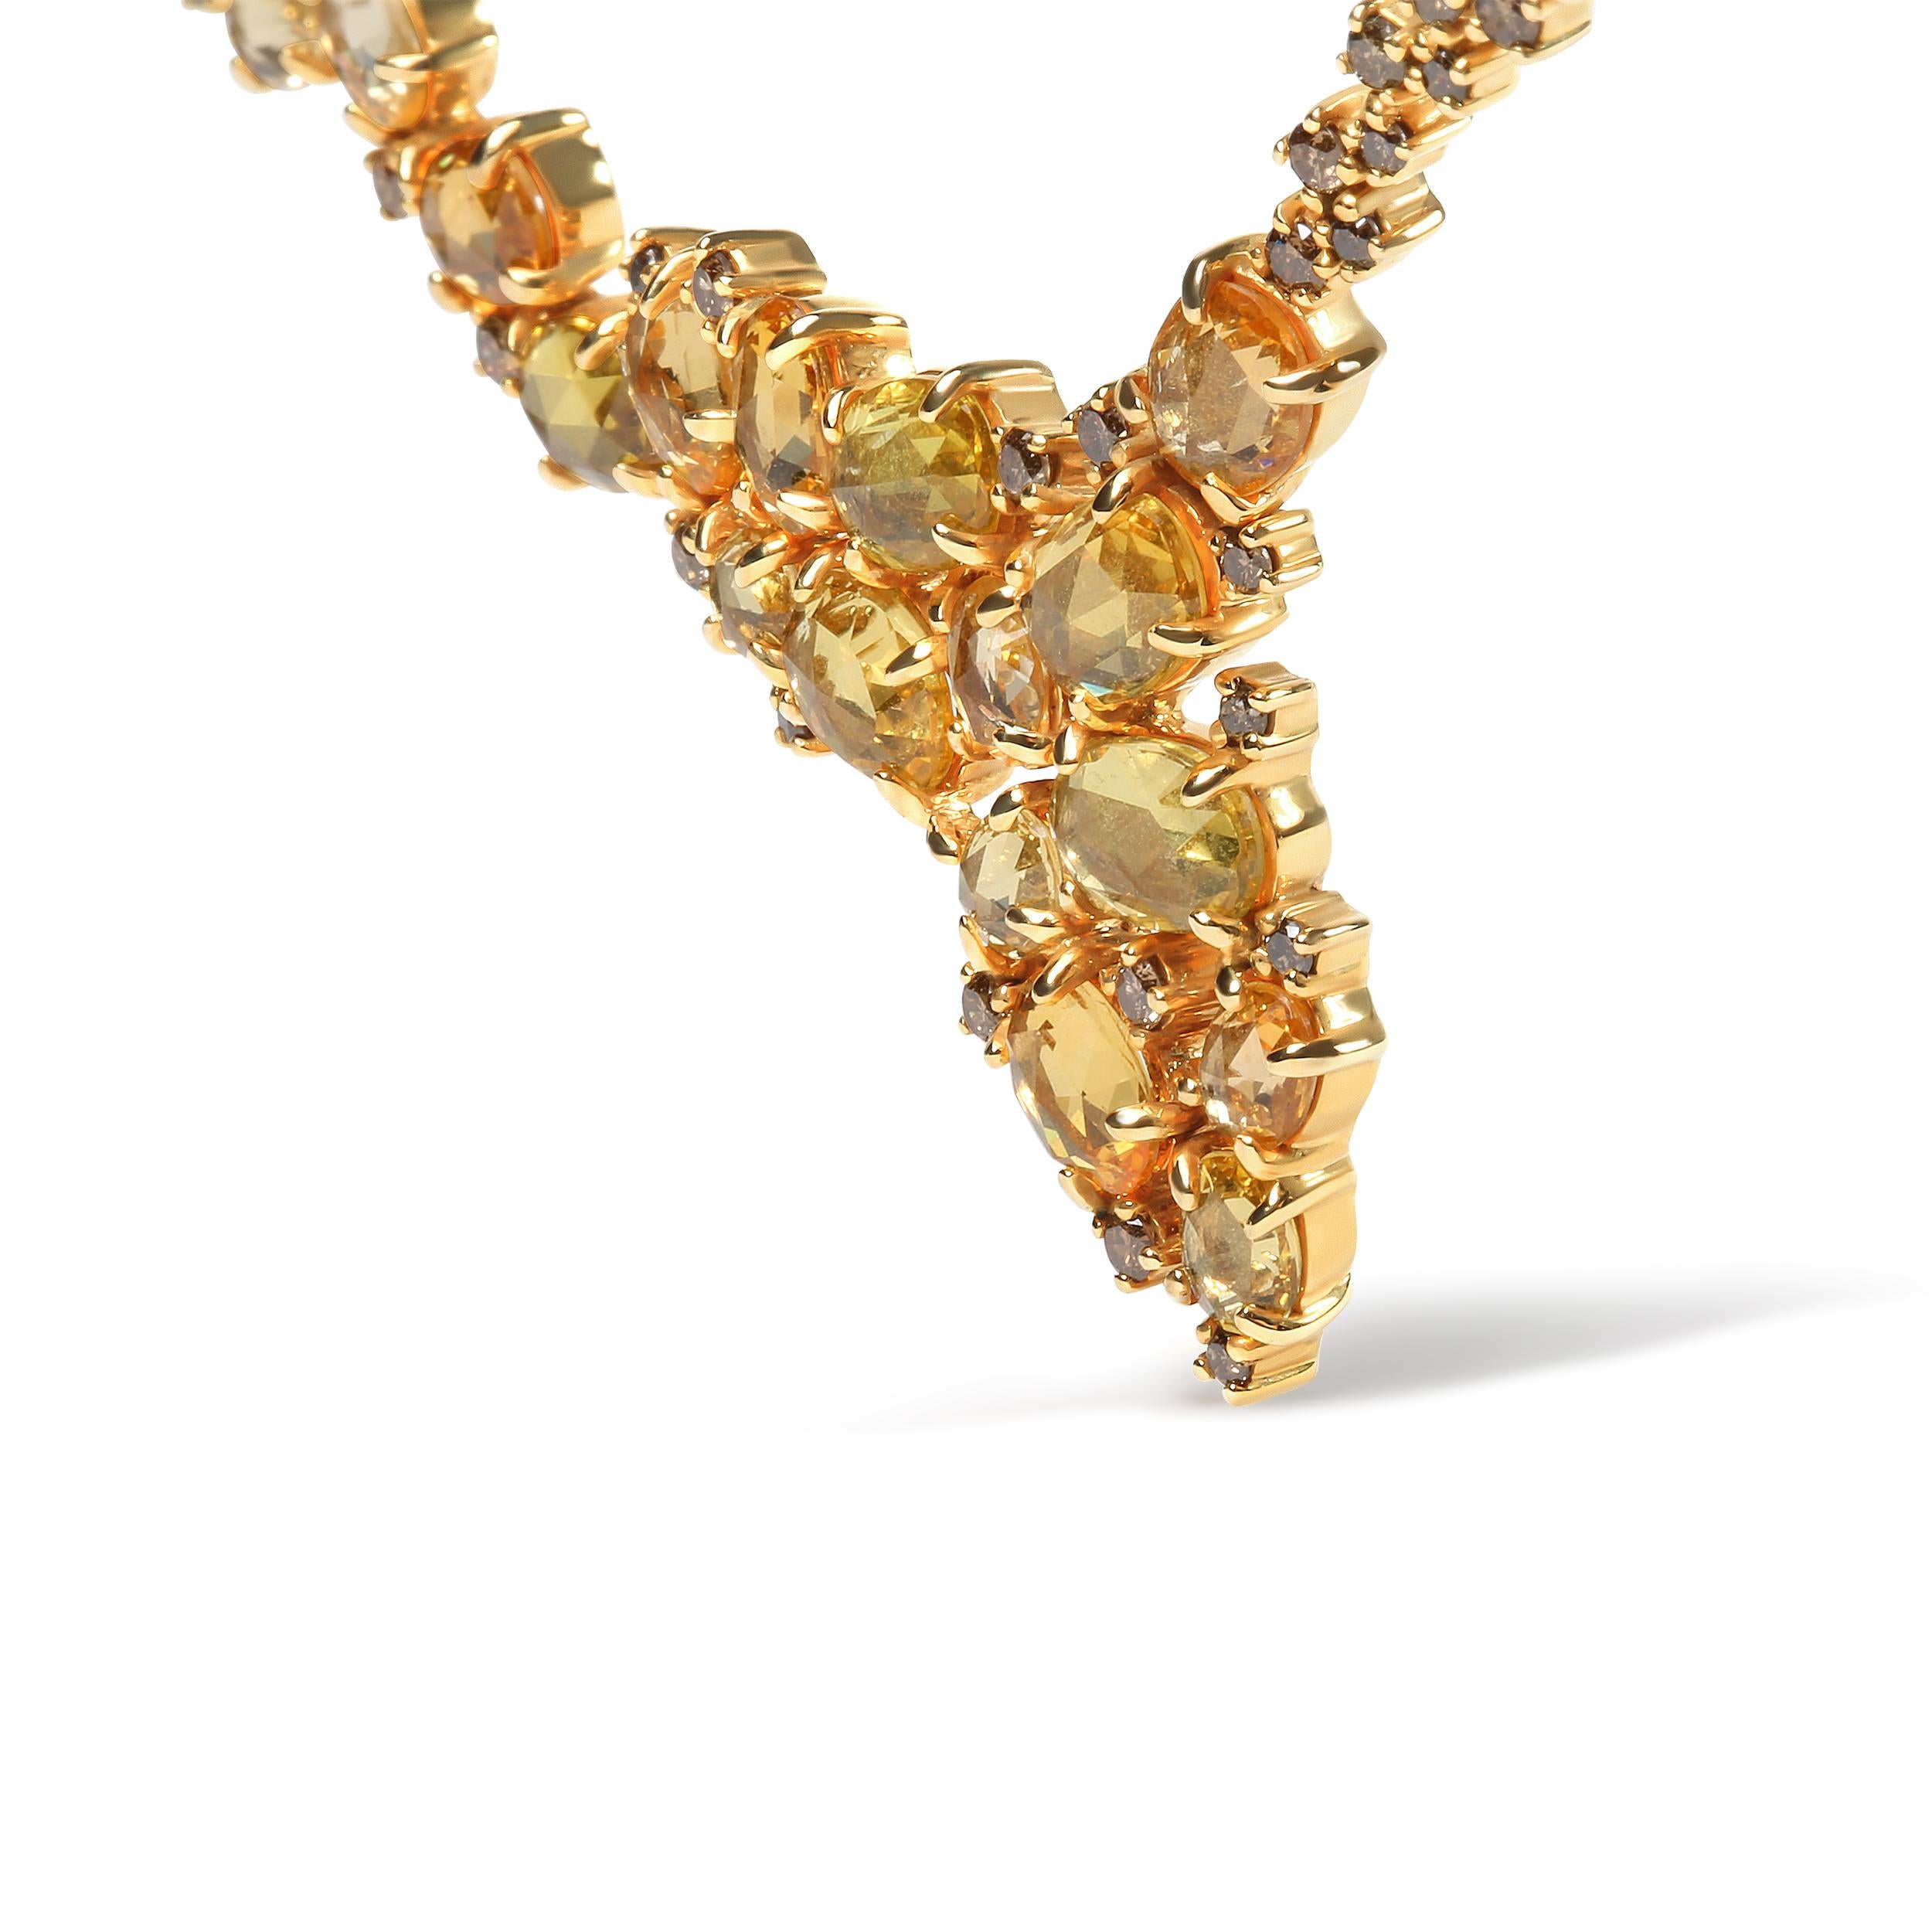 Diese Halskette aus 18-karätigem Gelbgold ist sowohl für den Tag als auch für die Nacht geeignet und wird durch das Funkeln natürlicher Edelsteine und Diamanten in einem kaskadenartigen Wasserfalldesign erhellt. Eine verstreute Anordnung natürlicher